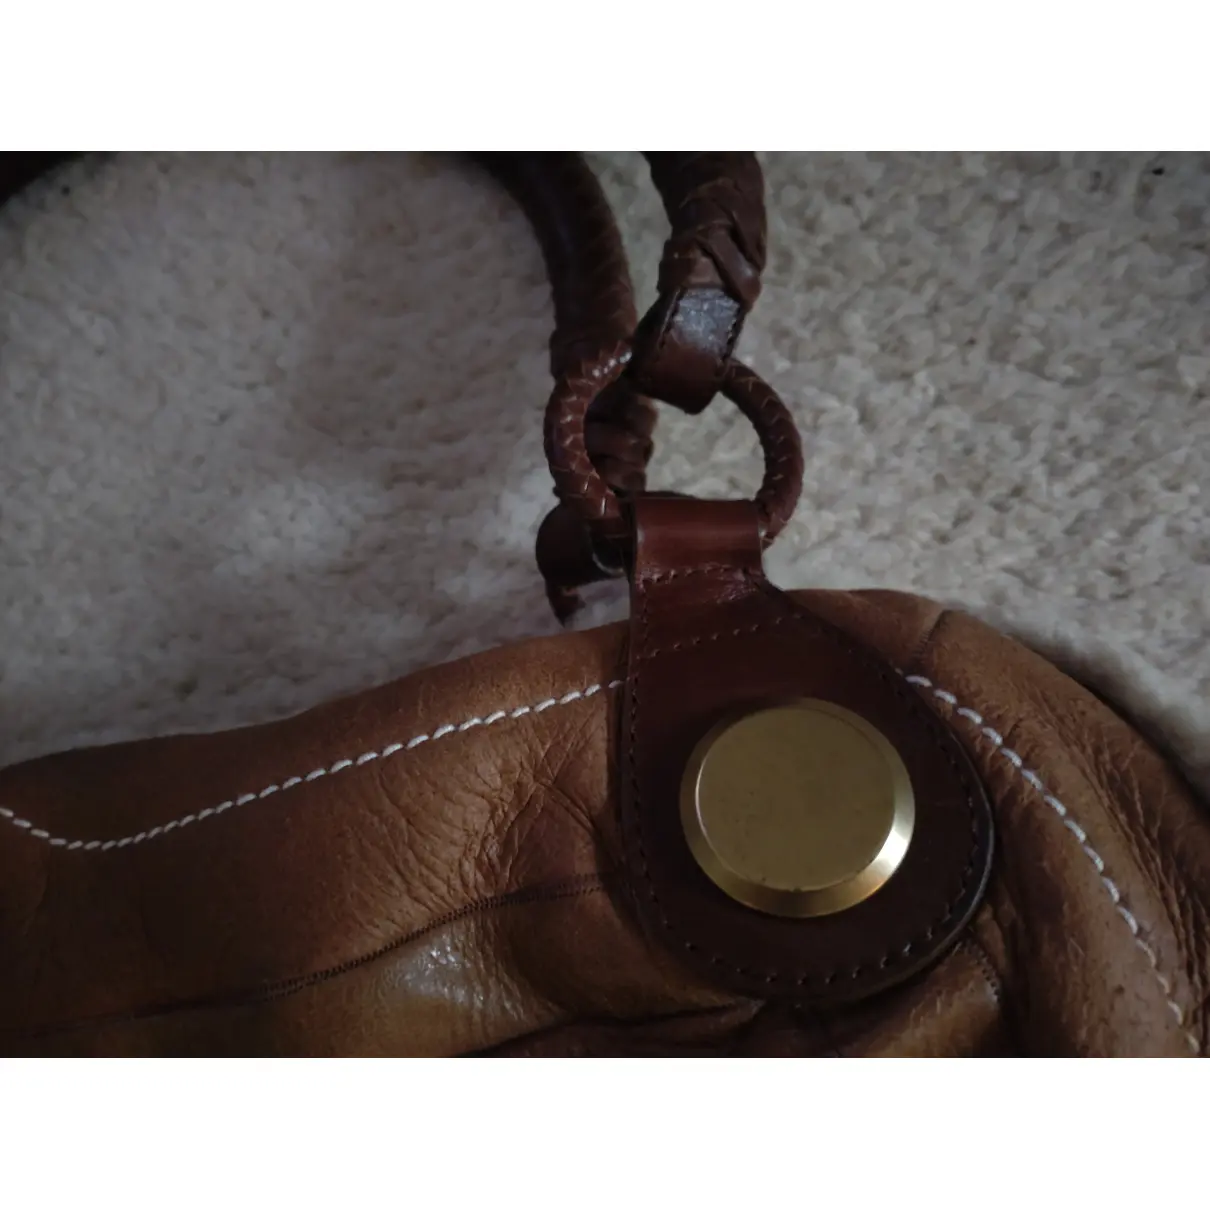 Buy Alexander McQueen Leather handbag online